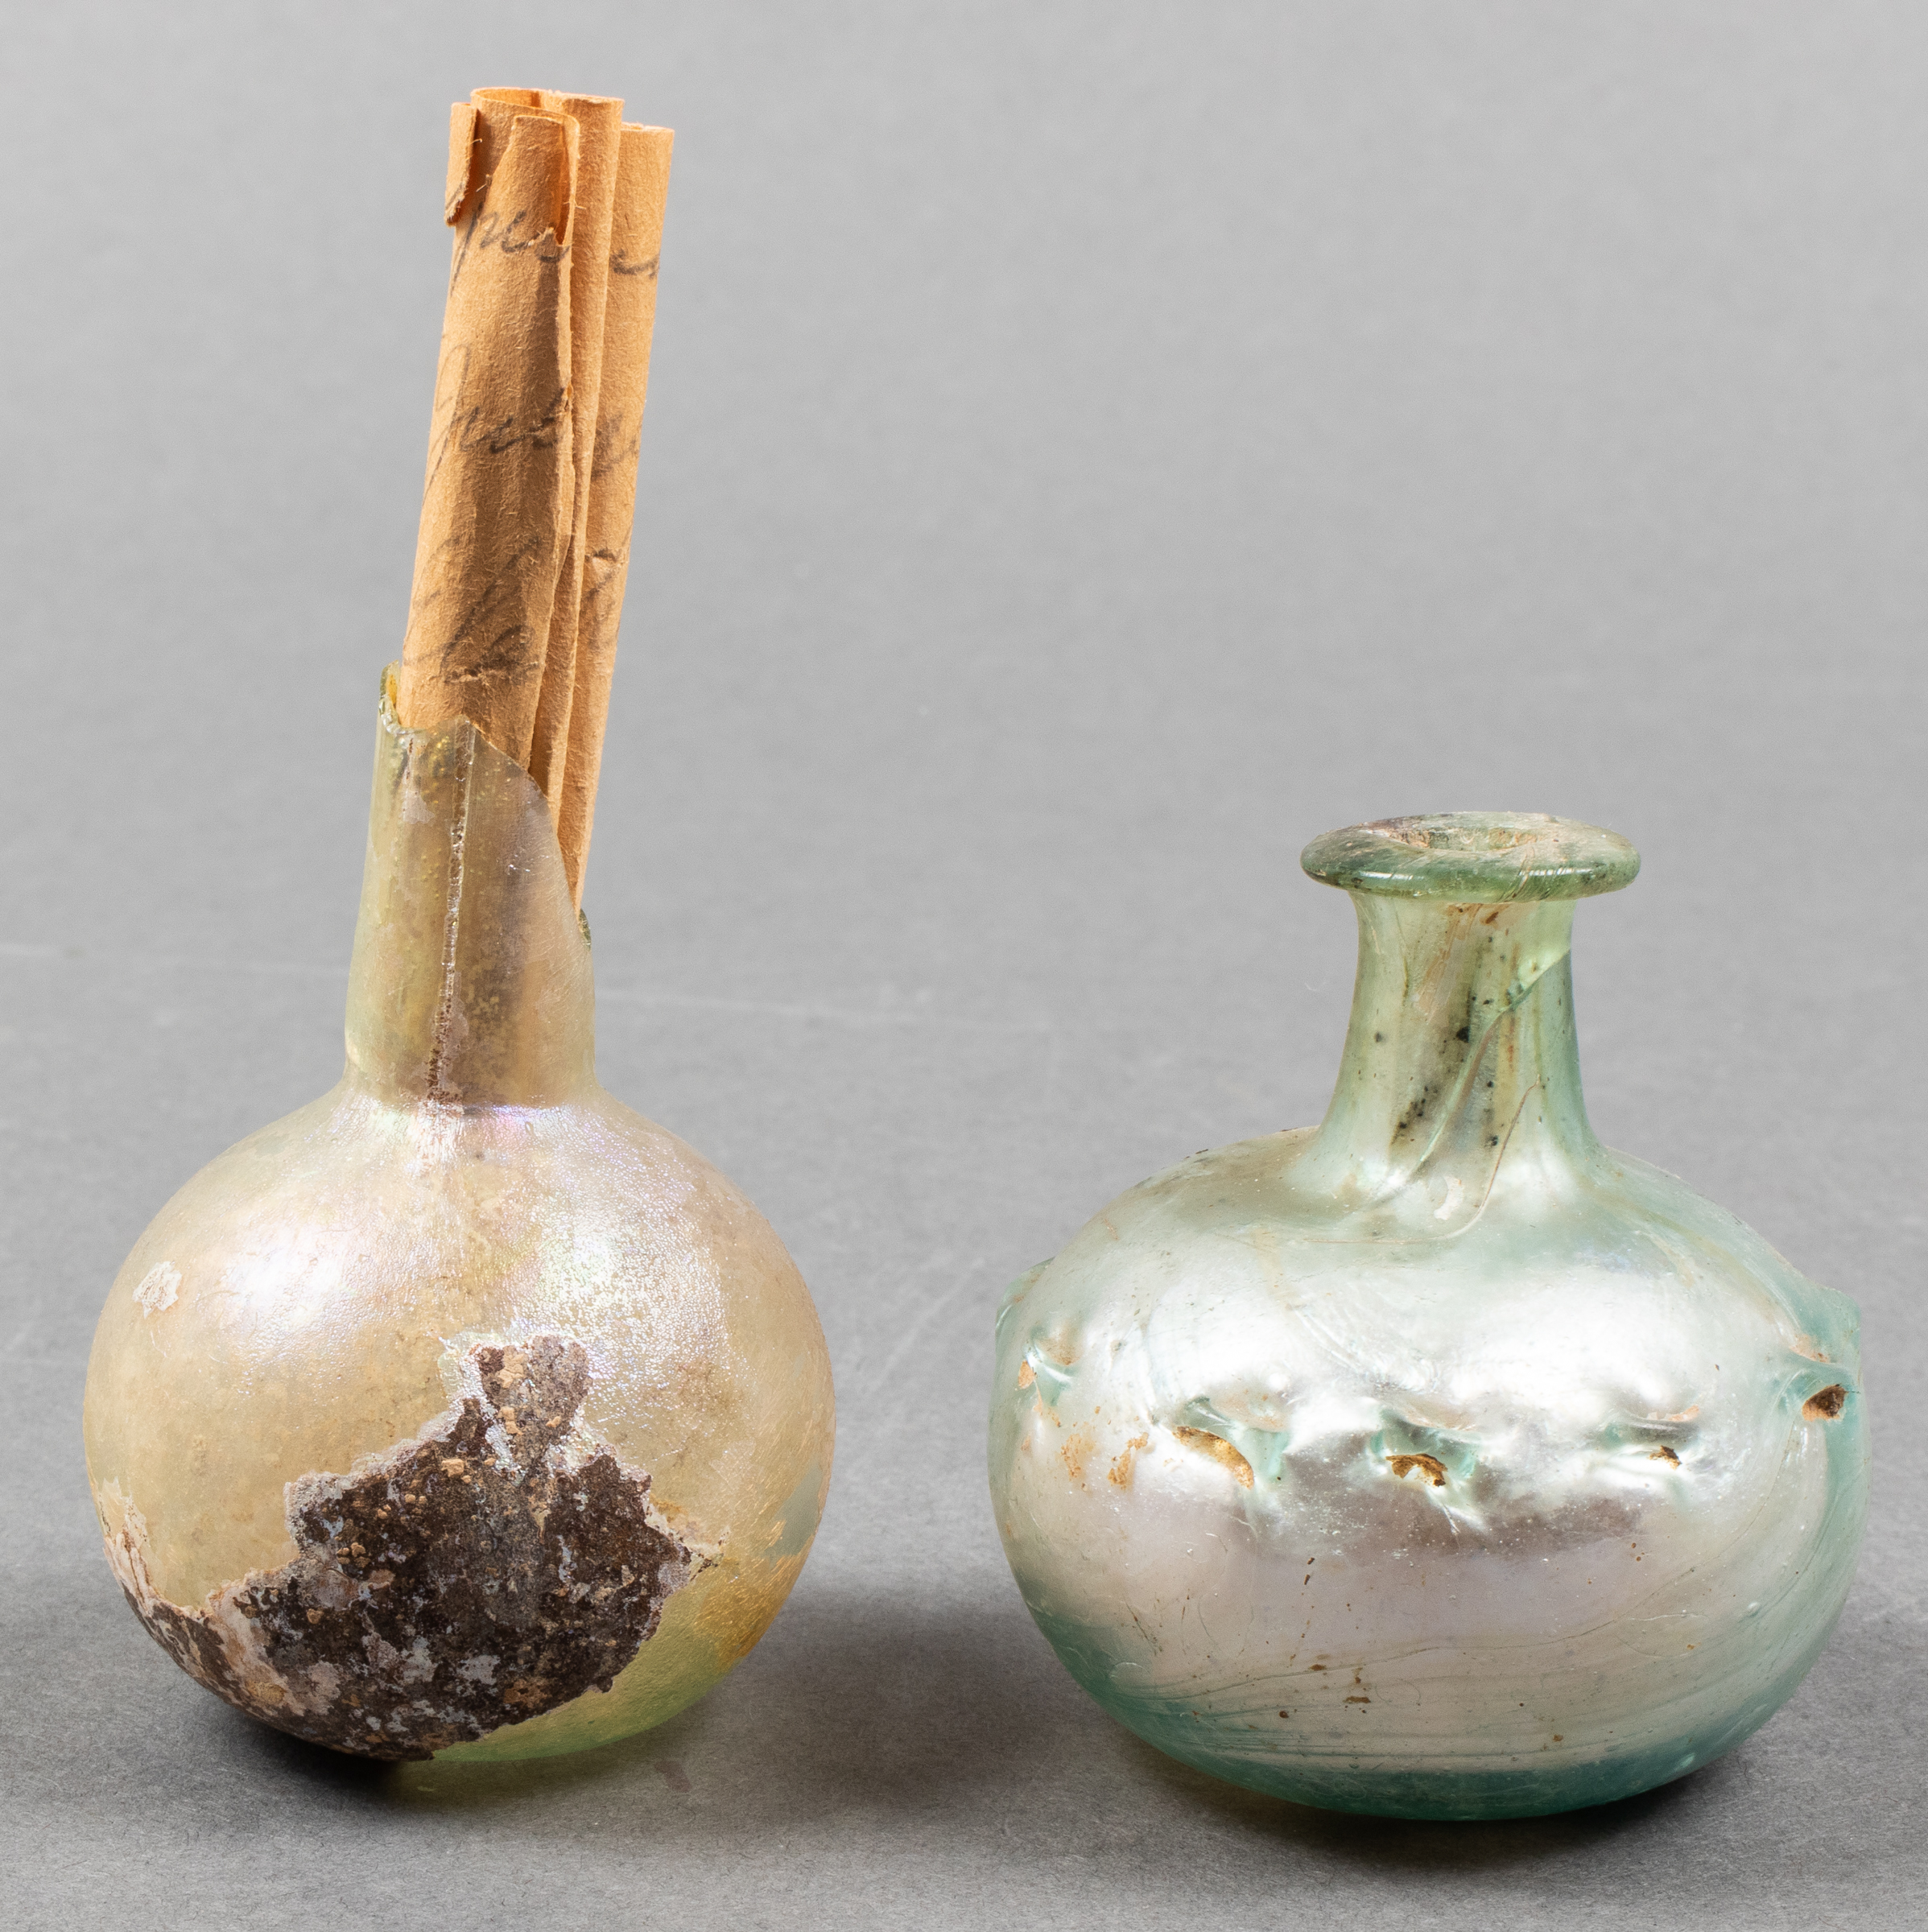 ANCIENT ROMAN GLASS VESSELS, 2